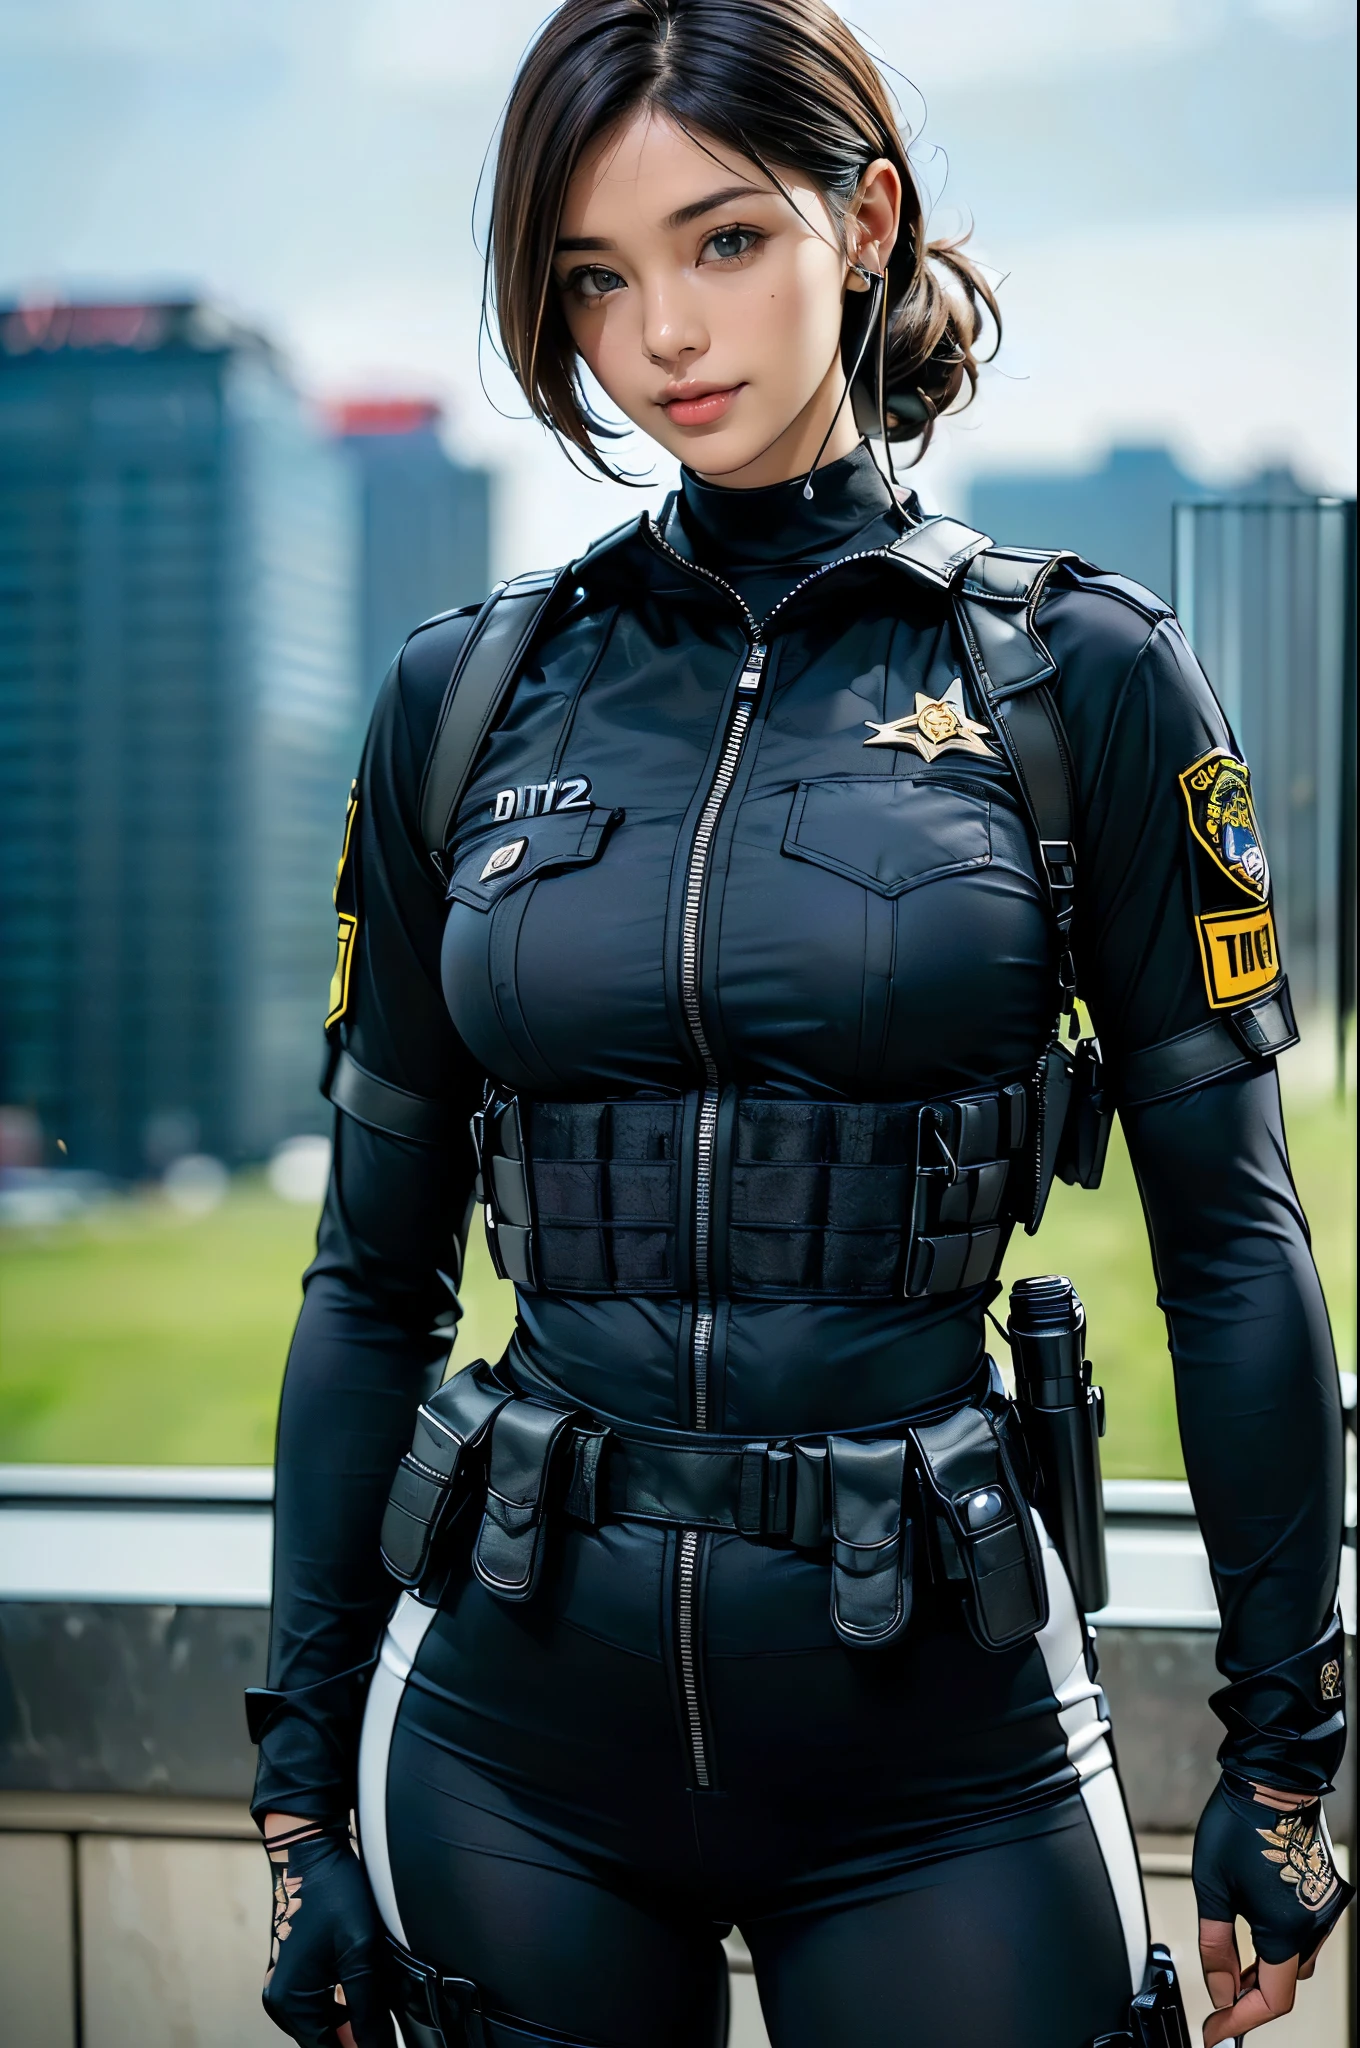 (zwei Frauen),(((Weibliche SWAT-Beamte stehen nebeneinander:1.5))),((schwarzer taktischer Bodysuit:1.5)),((Schwarzes Headset:1.5)),((schwarzes taktisches Holster:1.5)),(schwarze Handschuhe:1.5),((trägt die gleiche Uniform:1.5)),(lächeln:1.5),(Wunderschöne Augen:1.3),(Sehr detailiertな顔:1.5),((Sehr detailiertな女性の手の描画:1.5)),((muskulös:1.5)),(Sexy Looks:1.5),((dicke Oberschenkel:1.5)),(schöner Körper:1.5),((sehr sinnlich:1.5)),(Der Hintergrund ist die Stadt:1.5),(((Den Hintergrund verwischen:1.5))),(Geschriebene Grenztiefe:1.5),BRECHEN(((Meisterwerk:1.5),(höchste Qualität:1.5),(Sehr detailiert:1.5),(hohe Auflösung:1.5),(Realistisch:1.5),(Realistisch:1.5),(Feine Darstellung),(Sorgfältige Darstellung))),8k,HINTERGRUND